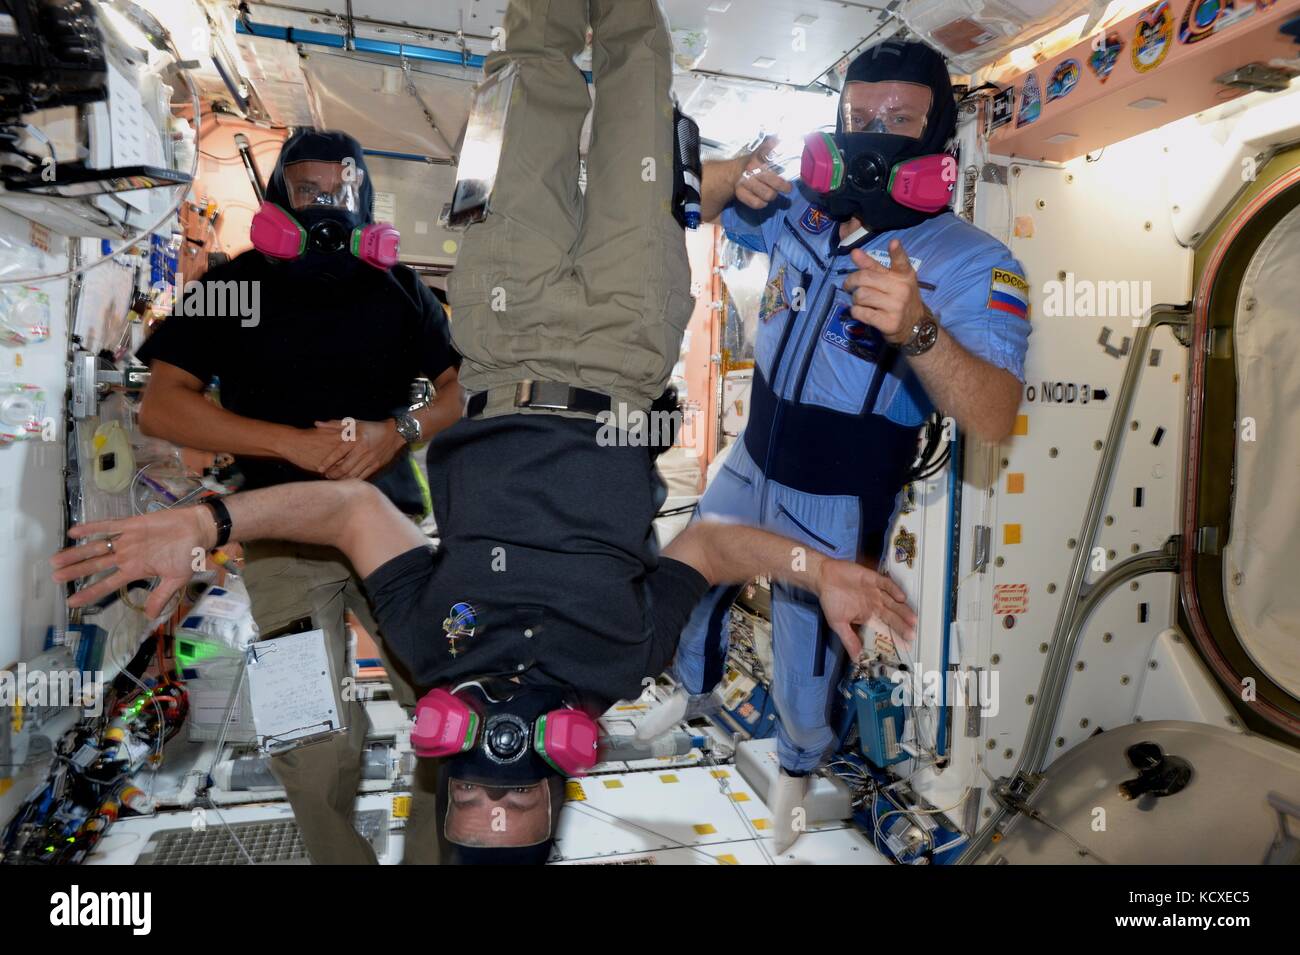 Nasa-Expedition 53 Crew Mitglieder amerikanischen Astronauten acaba, Joe, Mark vande Hei, Links, und der russische Kosmonaut Sasha misurkin Praxis sicherheitsübungen an Bord der Internationalen Raumstation im Orbit 25. September 2017. Stockfoto